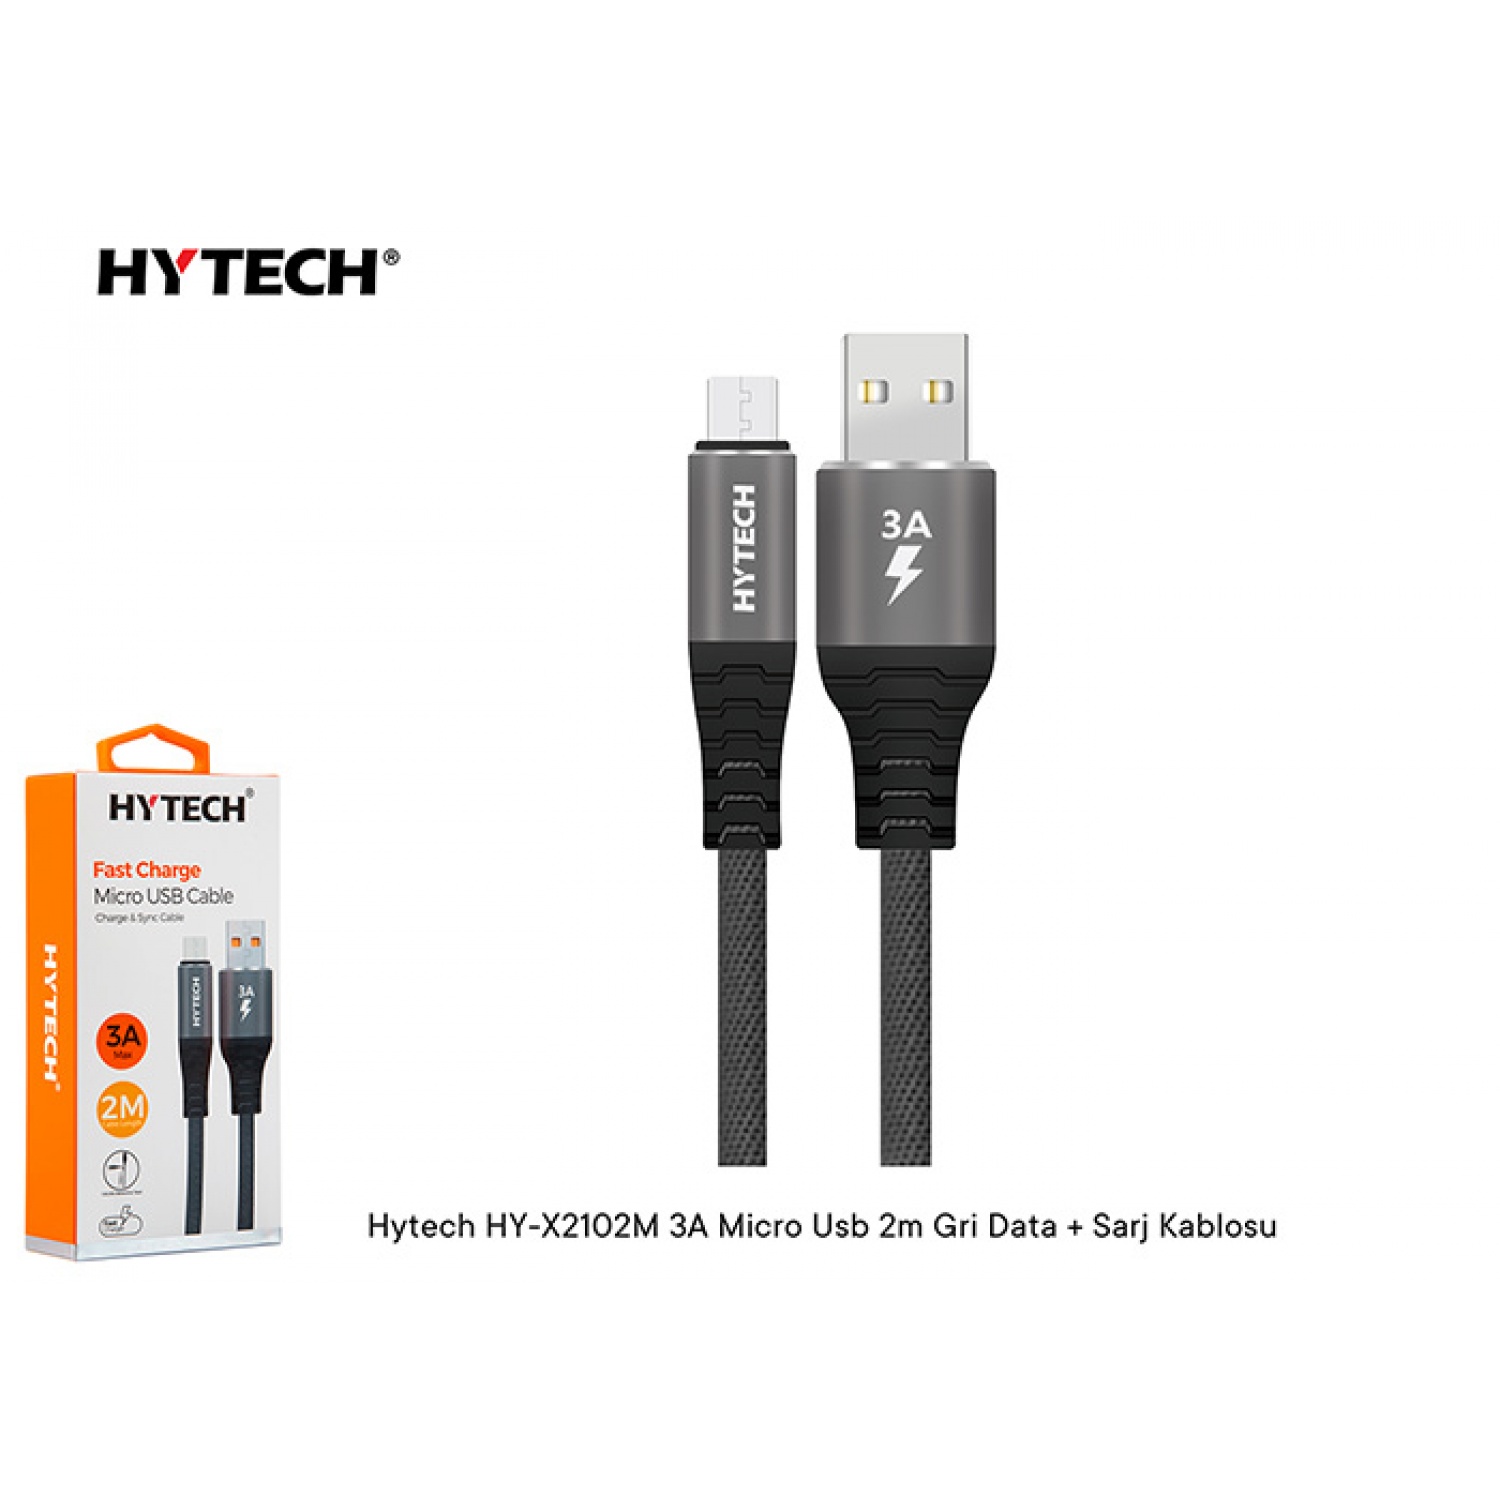 Hytech Hy-X2102M 3A Micro Usb 2M Gri Data + Sarj Kablosu